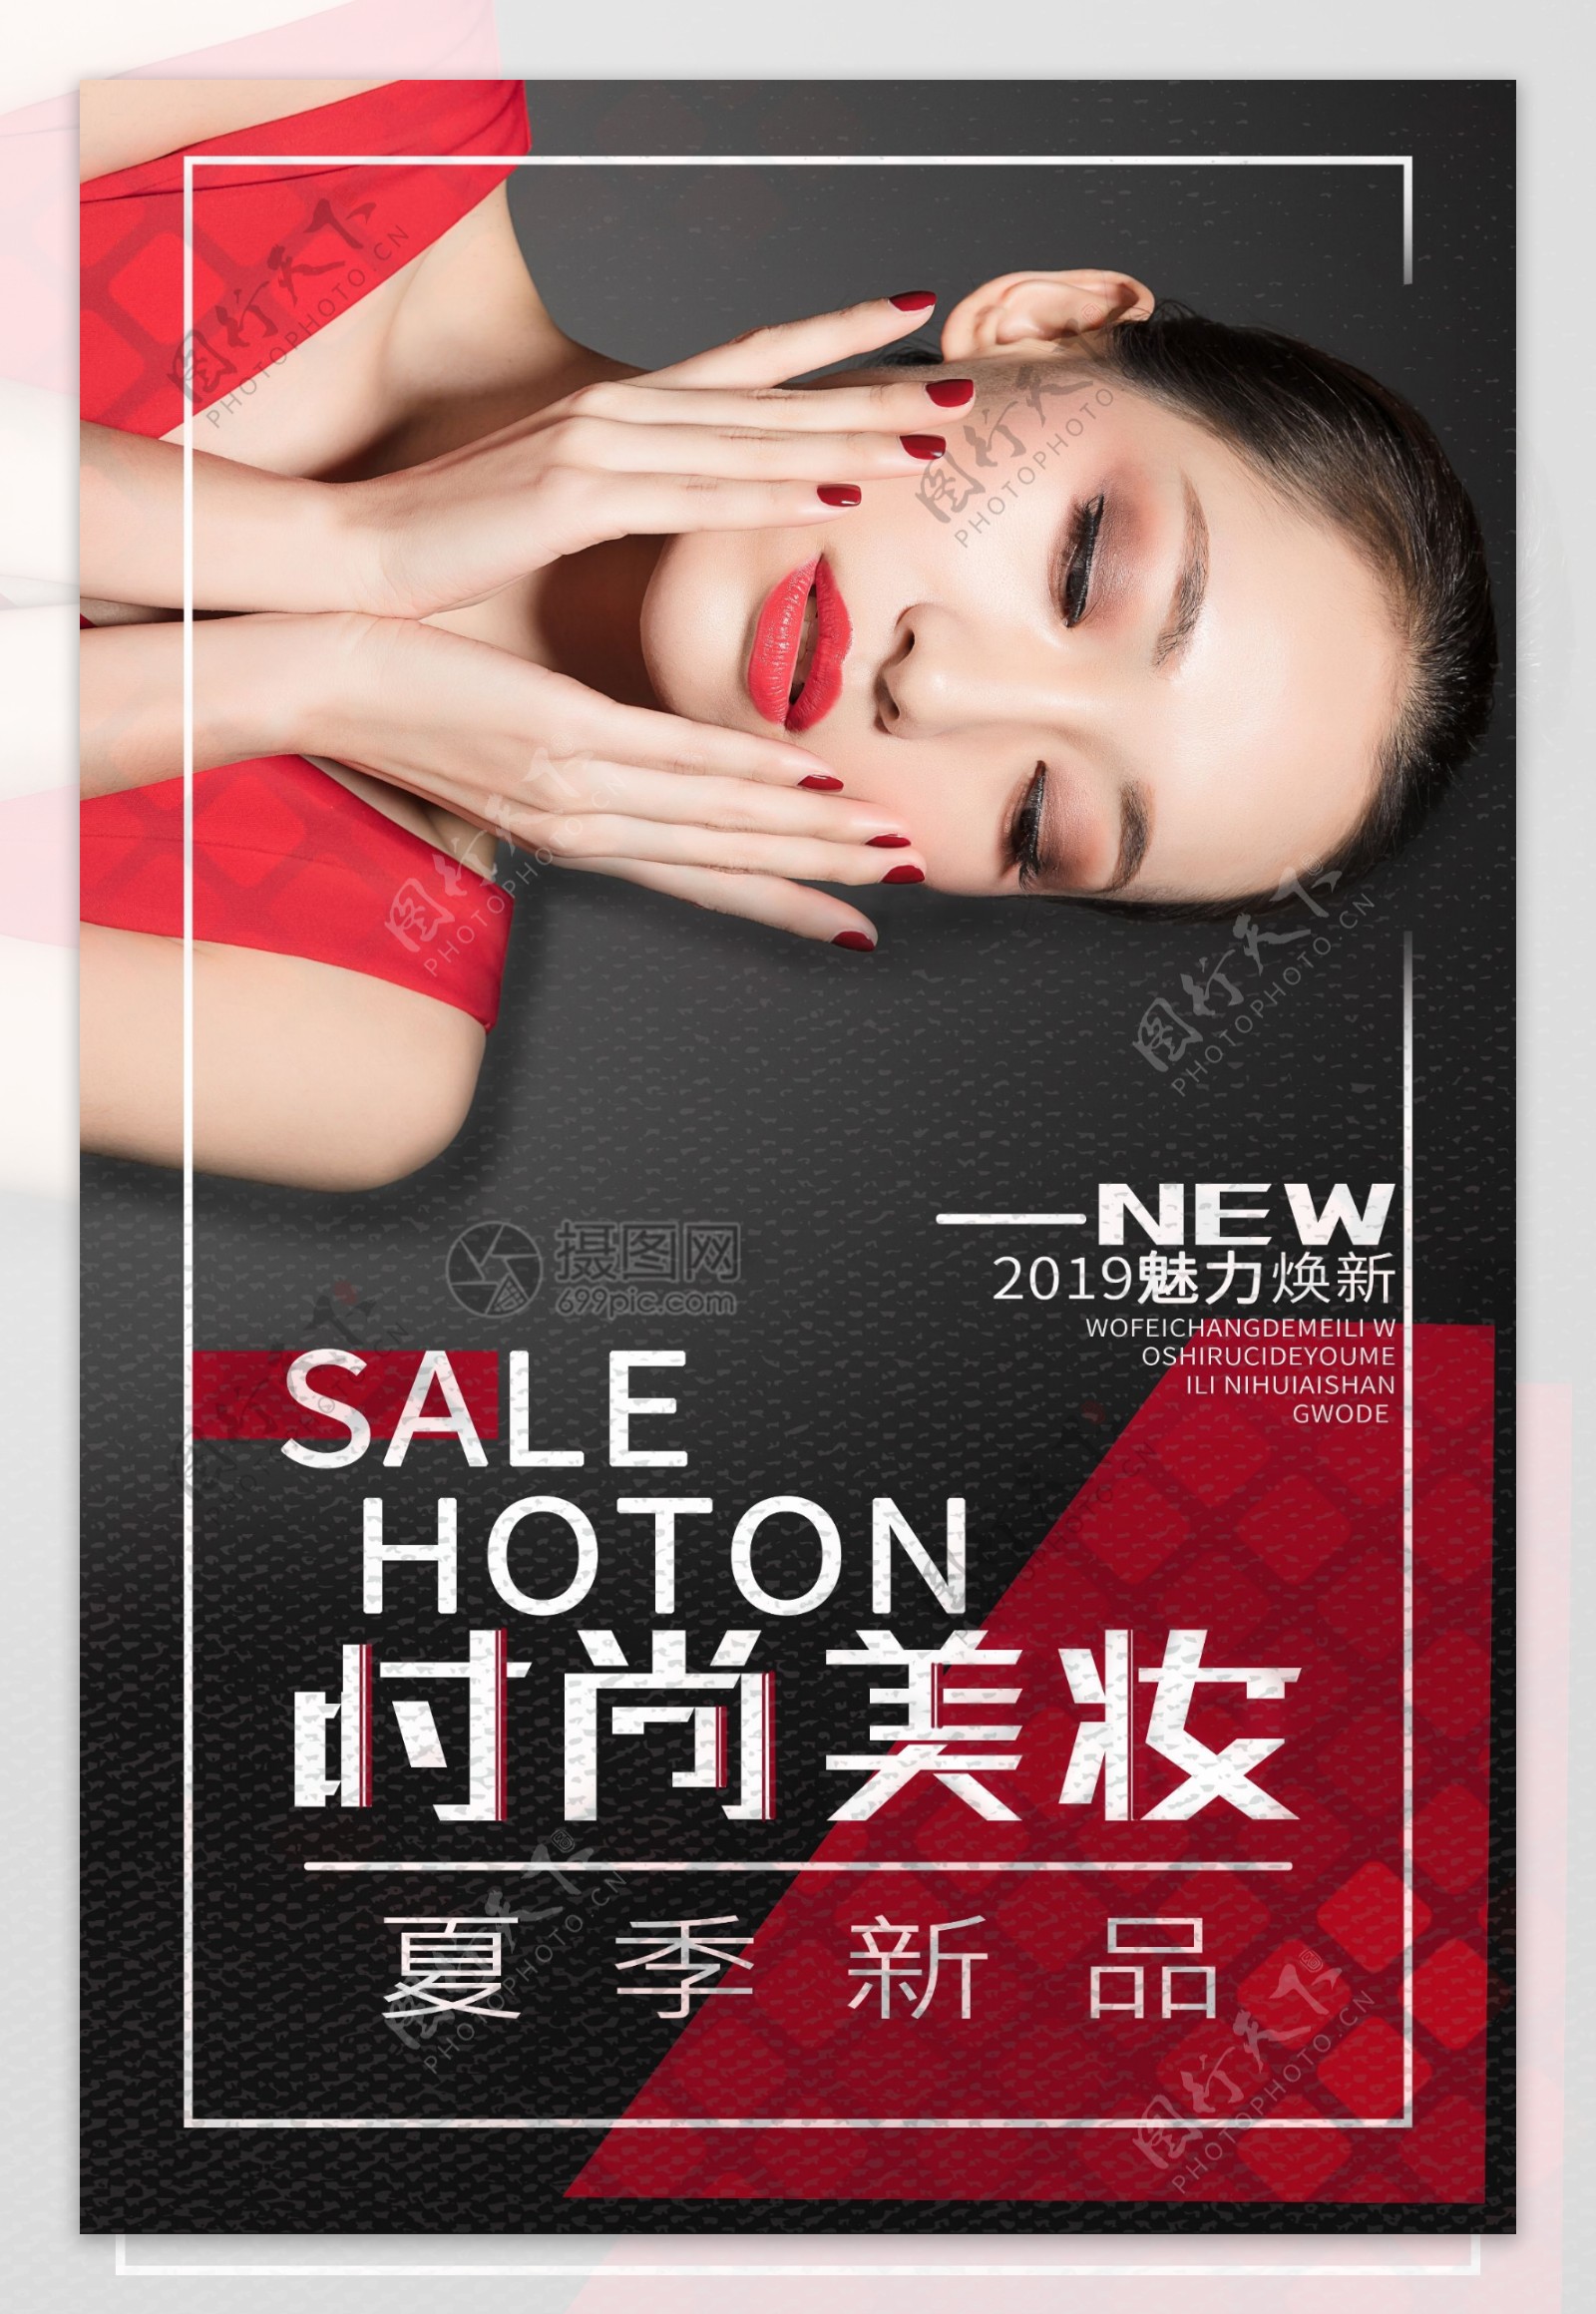 红黑创意时尚美妆促销海报